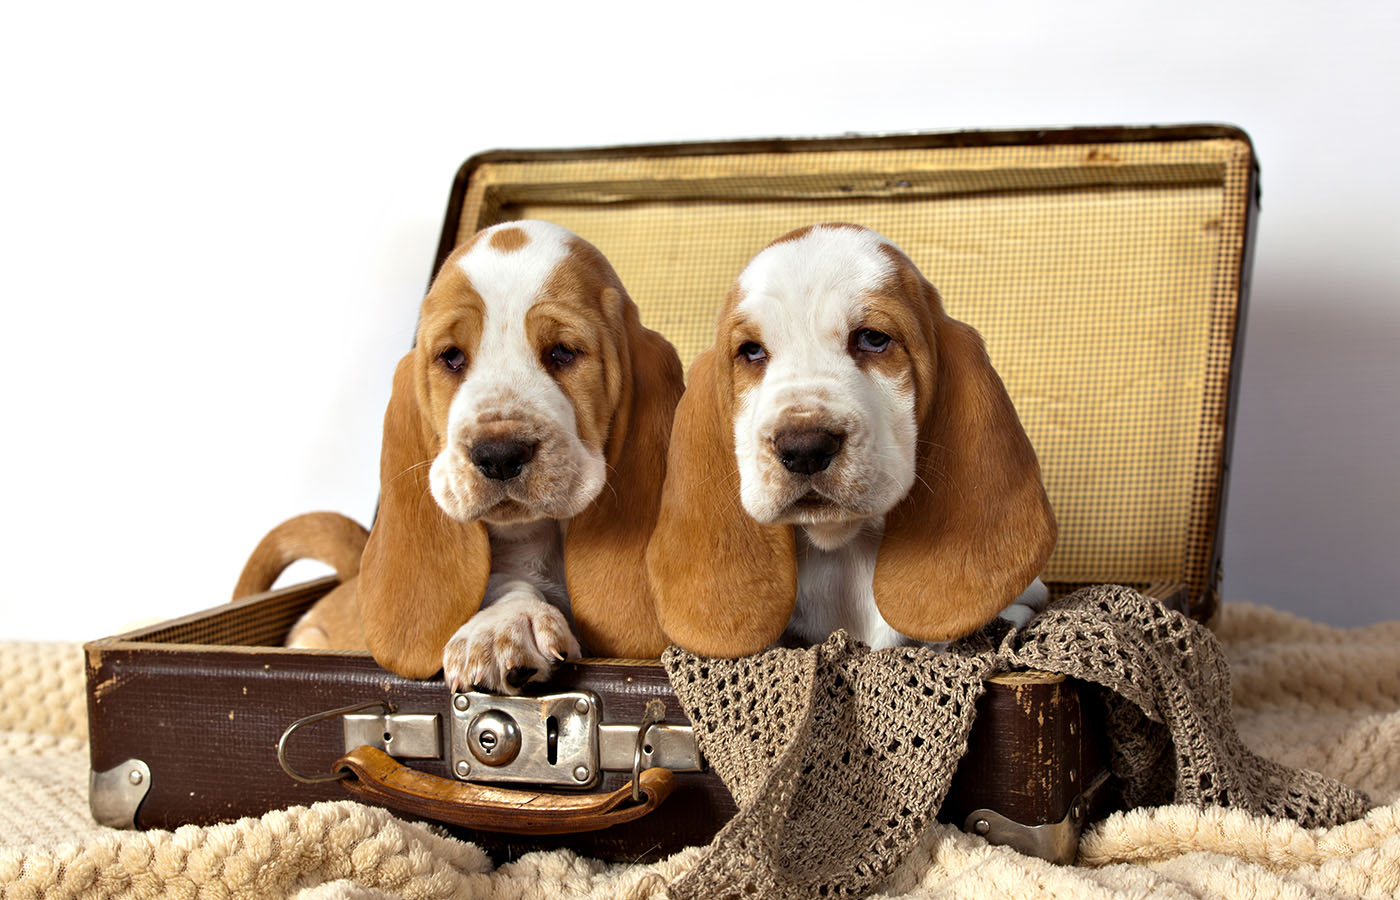 hound puppies in suitcase